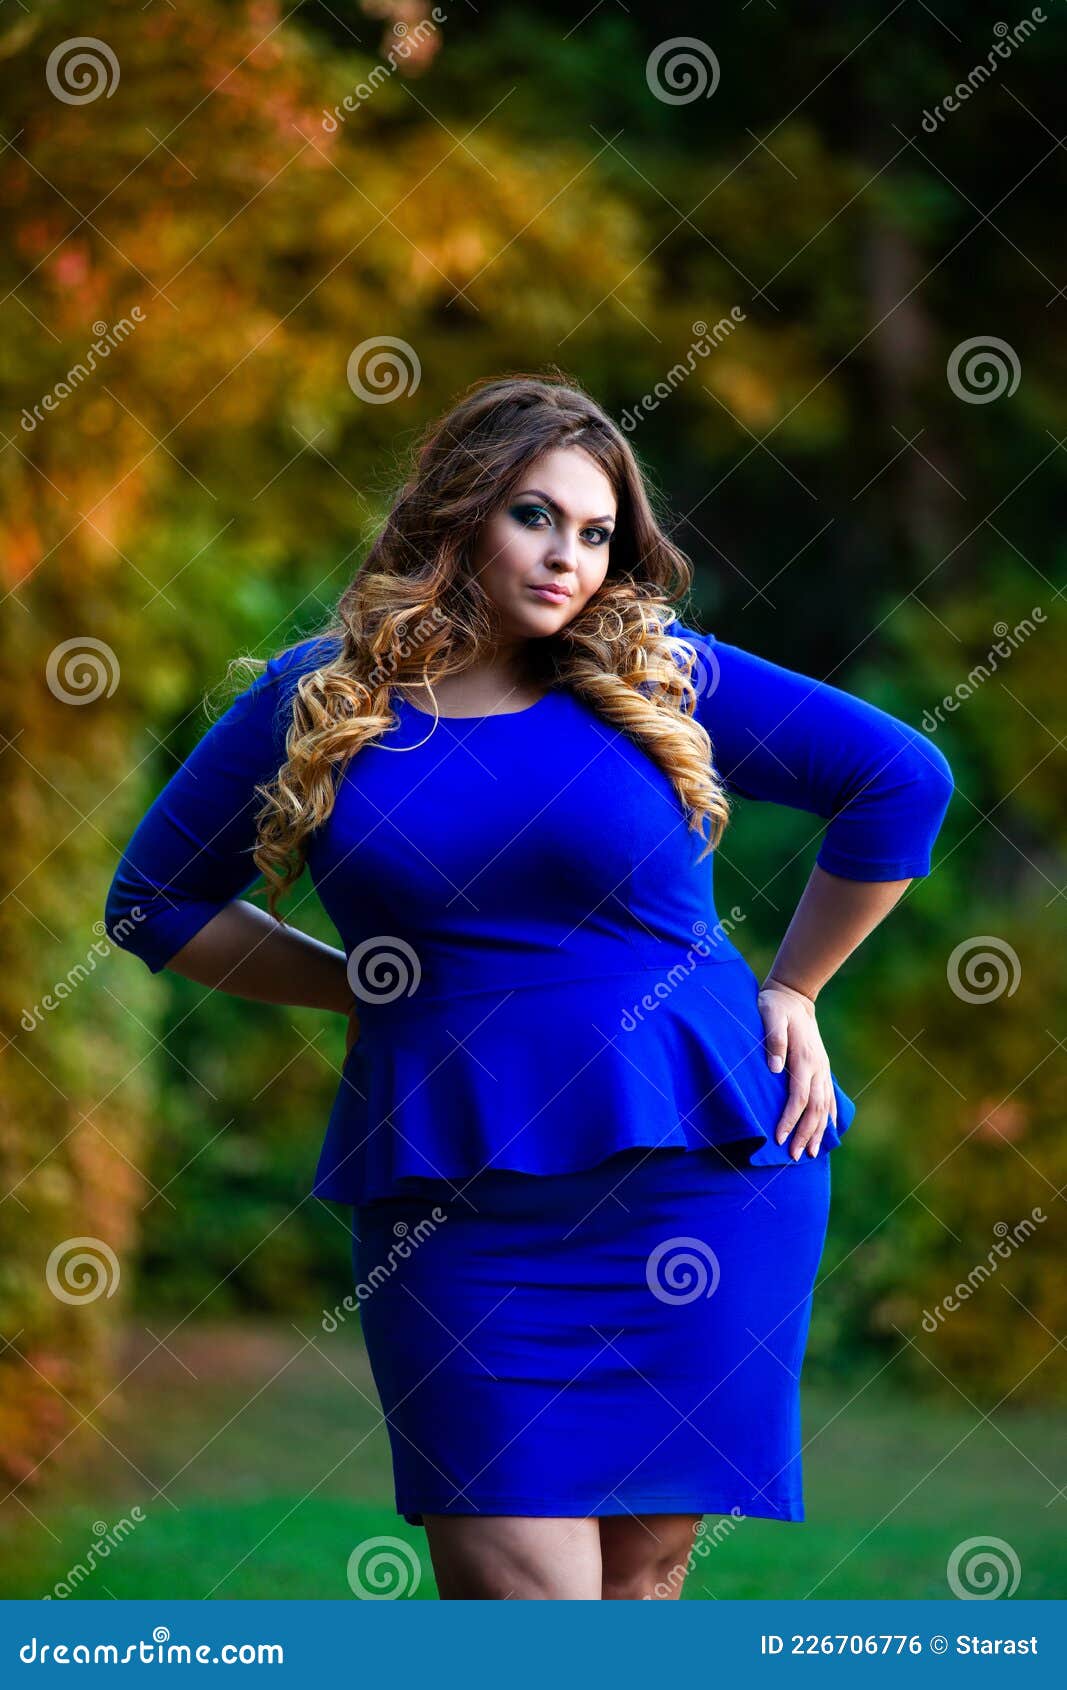 Beauty Plus Size Model in Blue Dress Outdoors, Fat Woman in Autumn Park ...